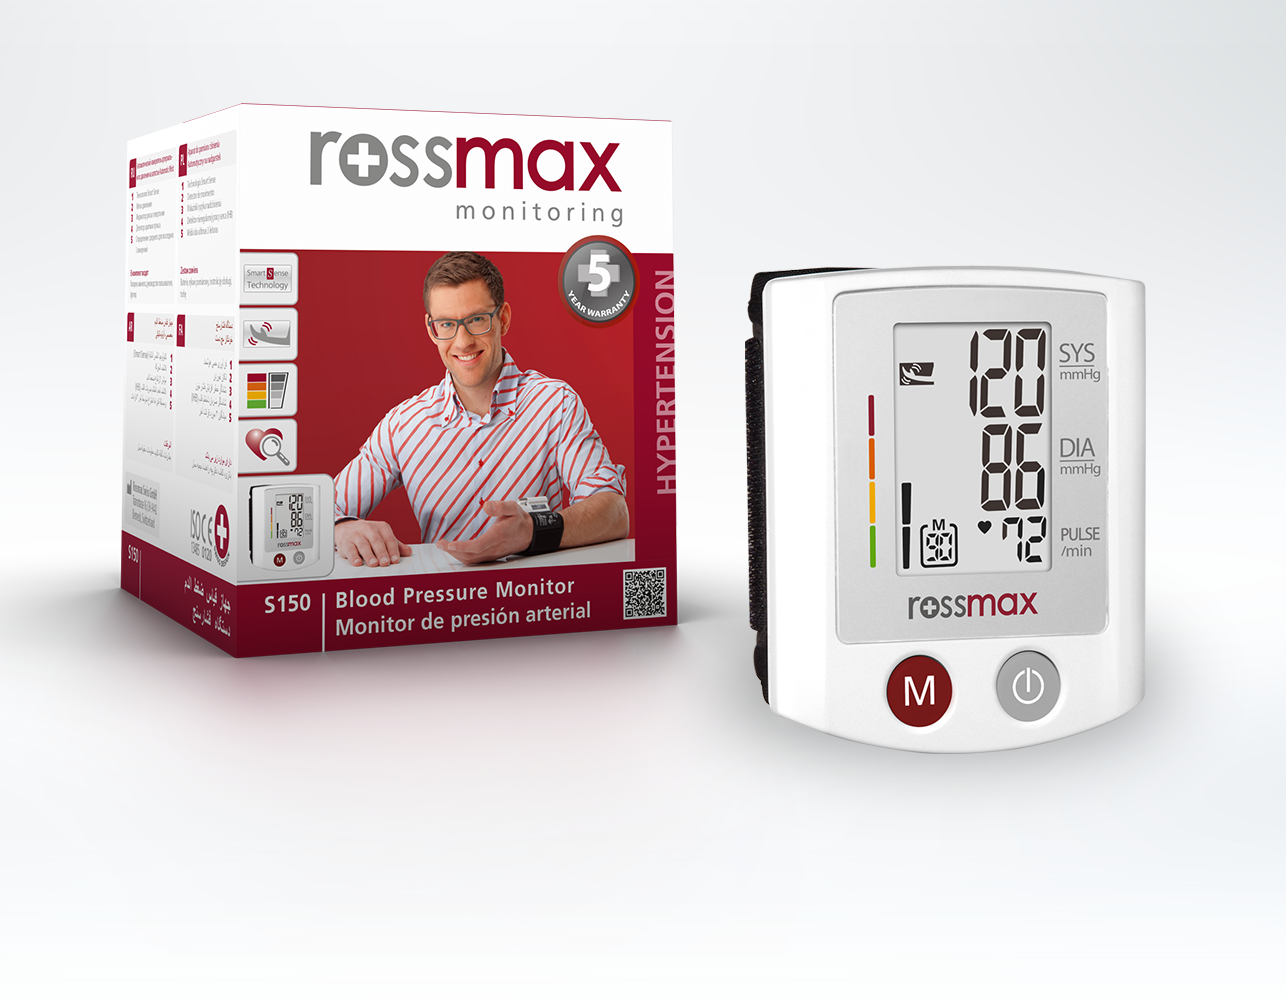 Làm thế nào để chuẩn bị bắp tay trước khi đo huyết áp với máy Rossmax?
